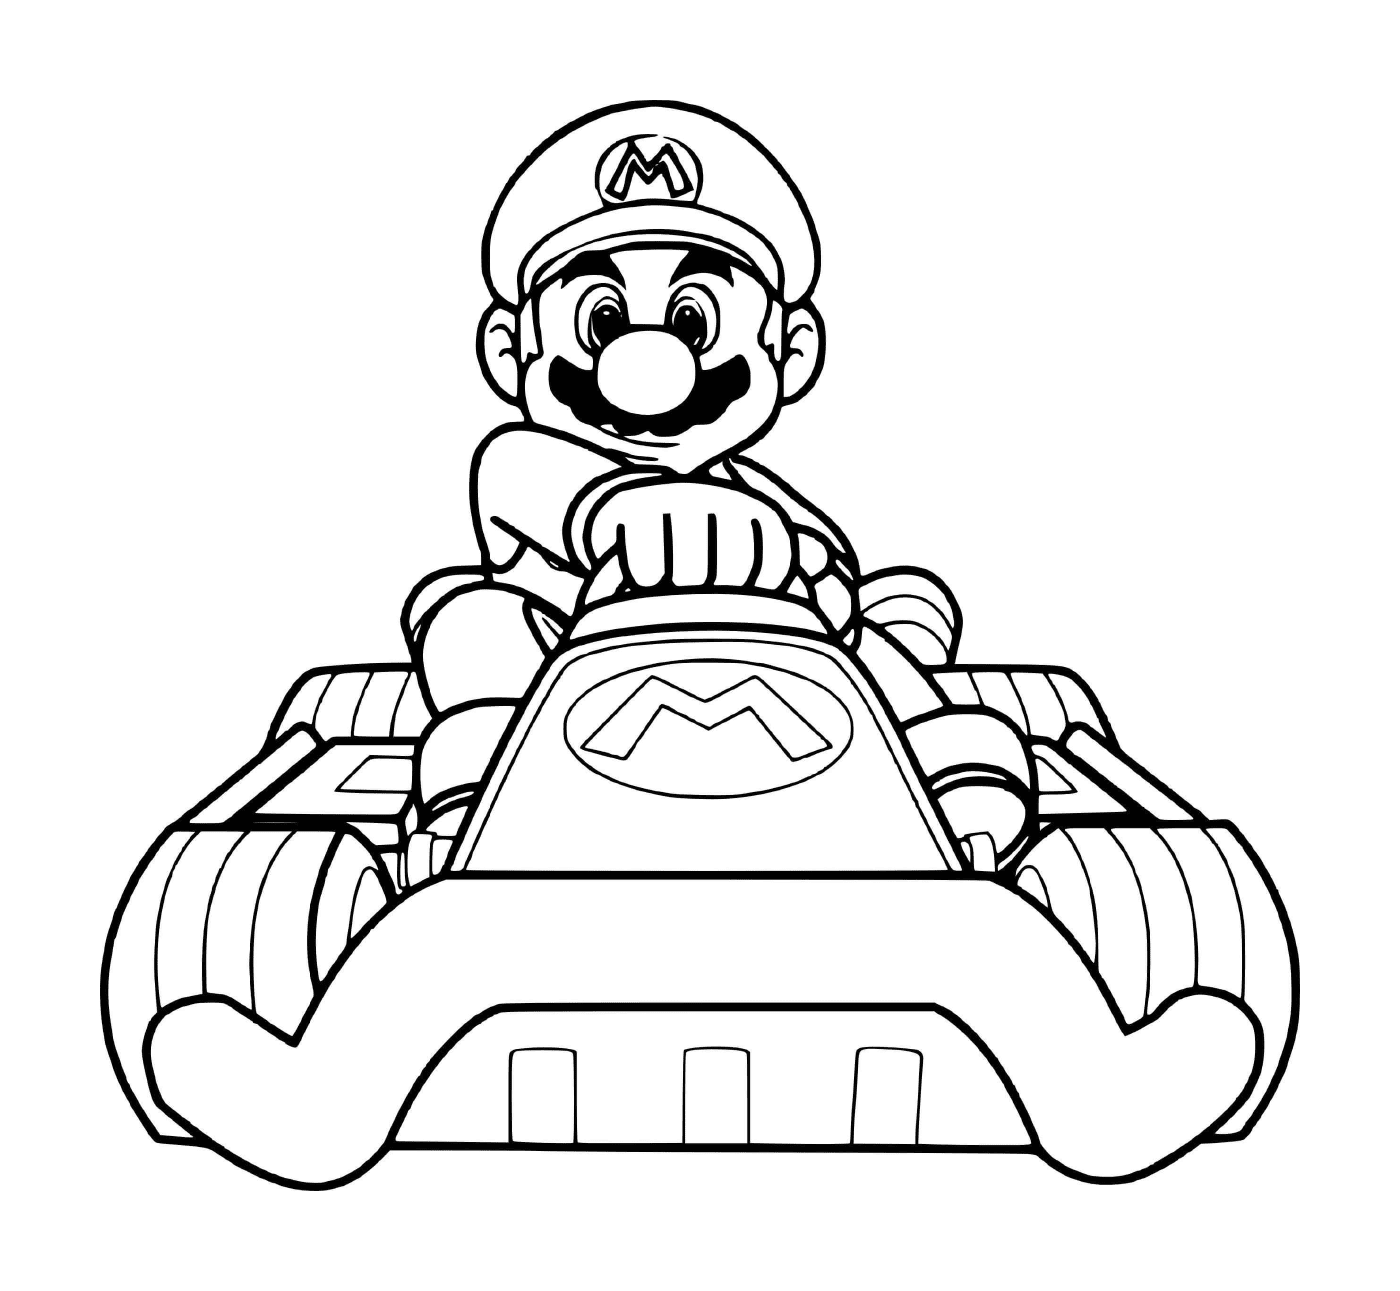  Mario listo para la carrera de coches deportivos 